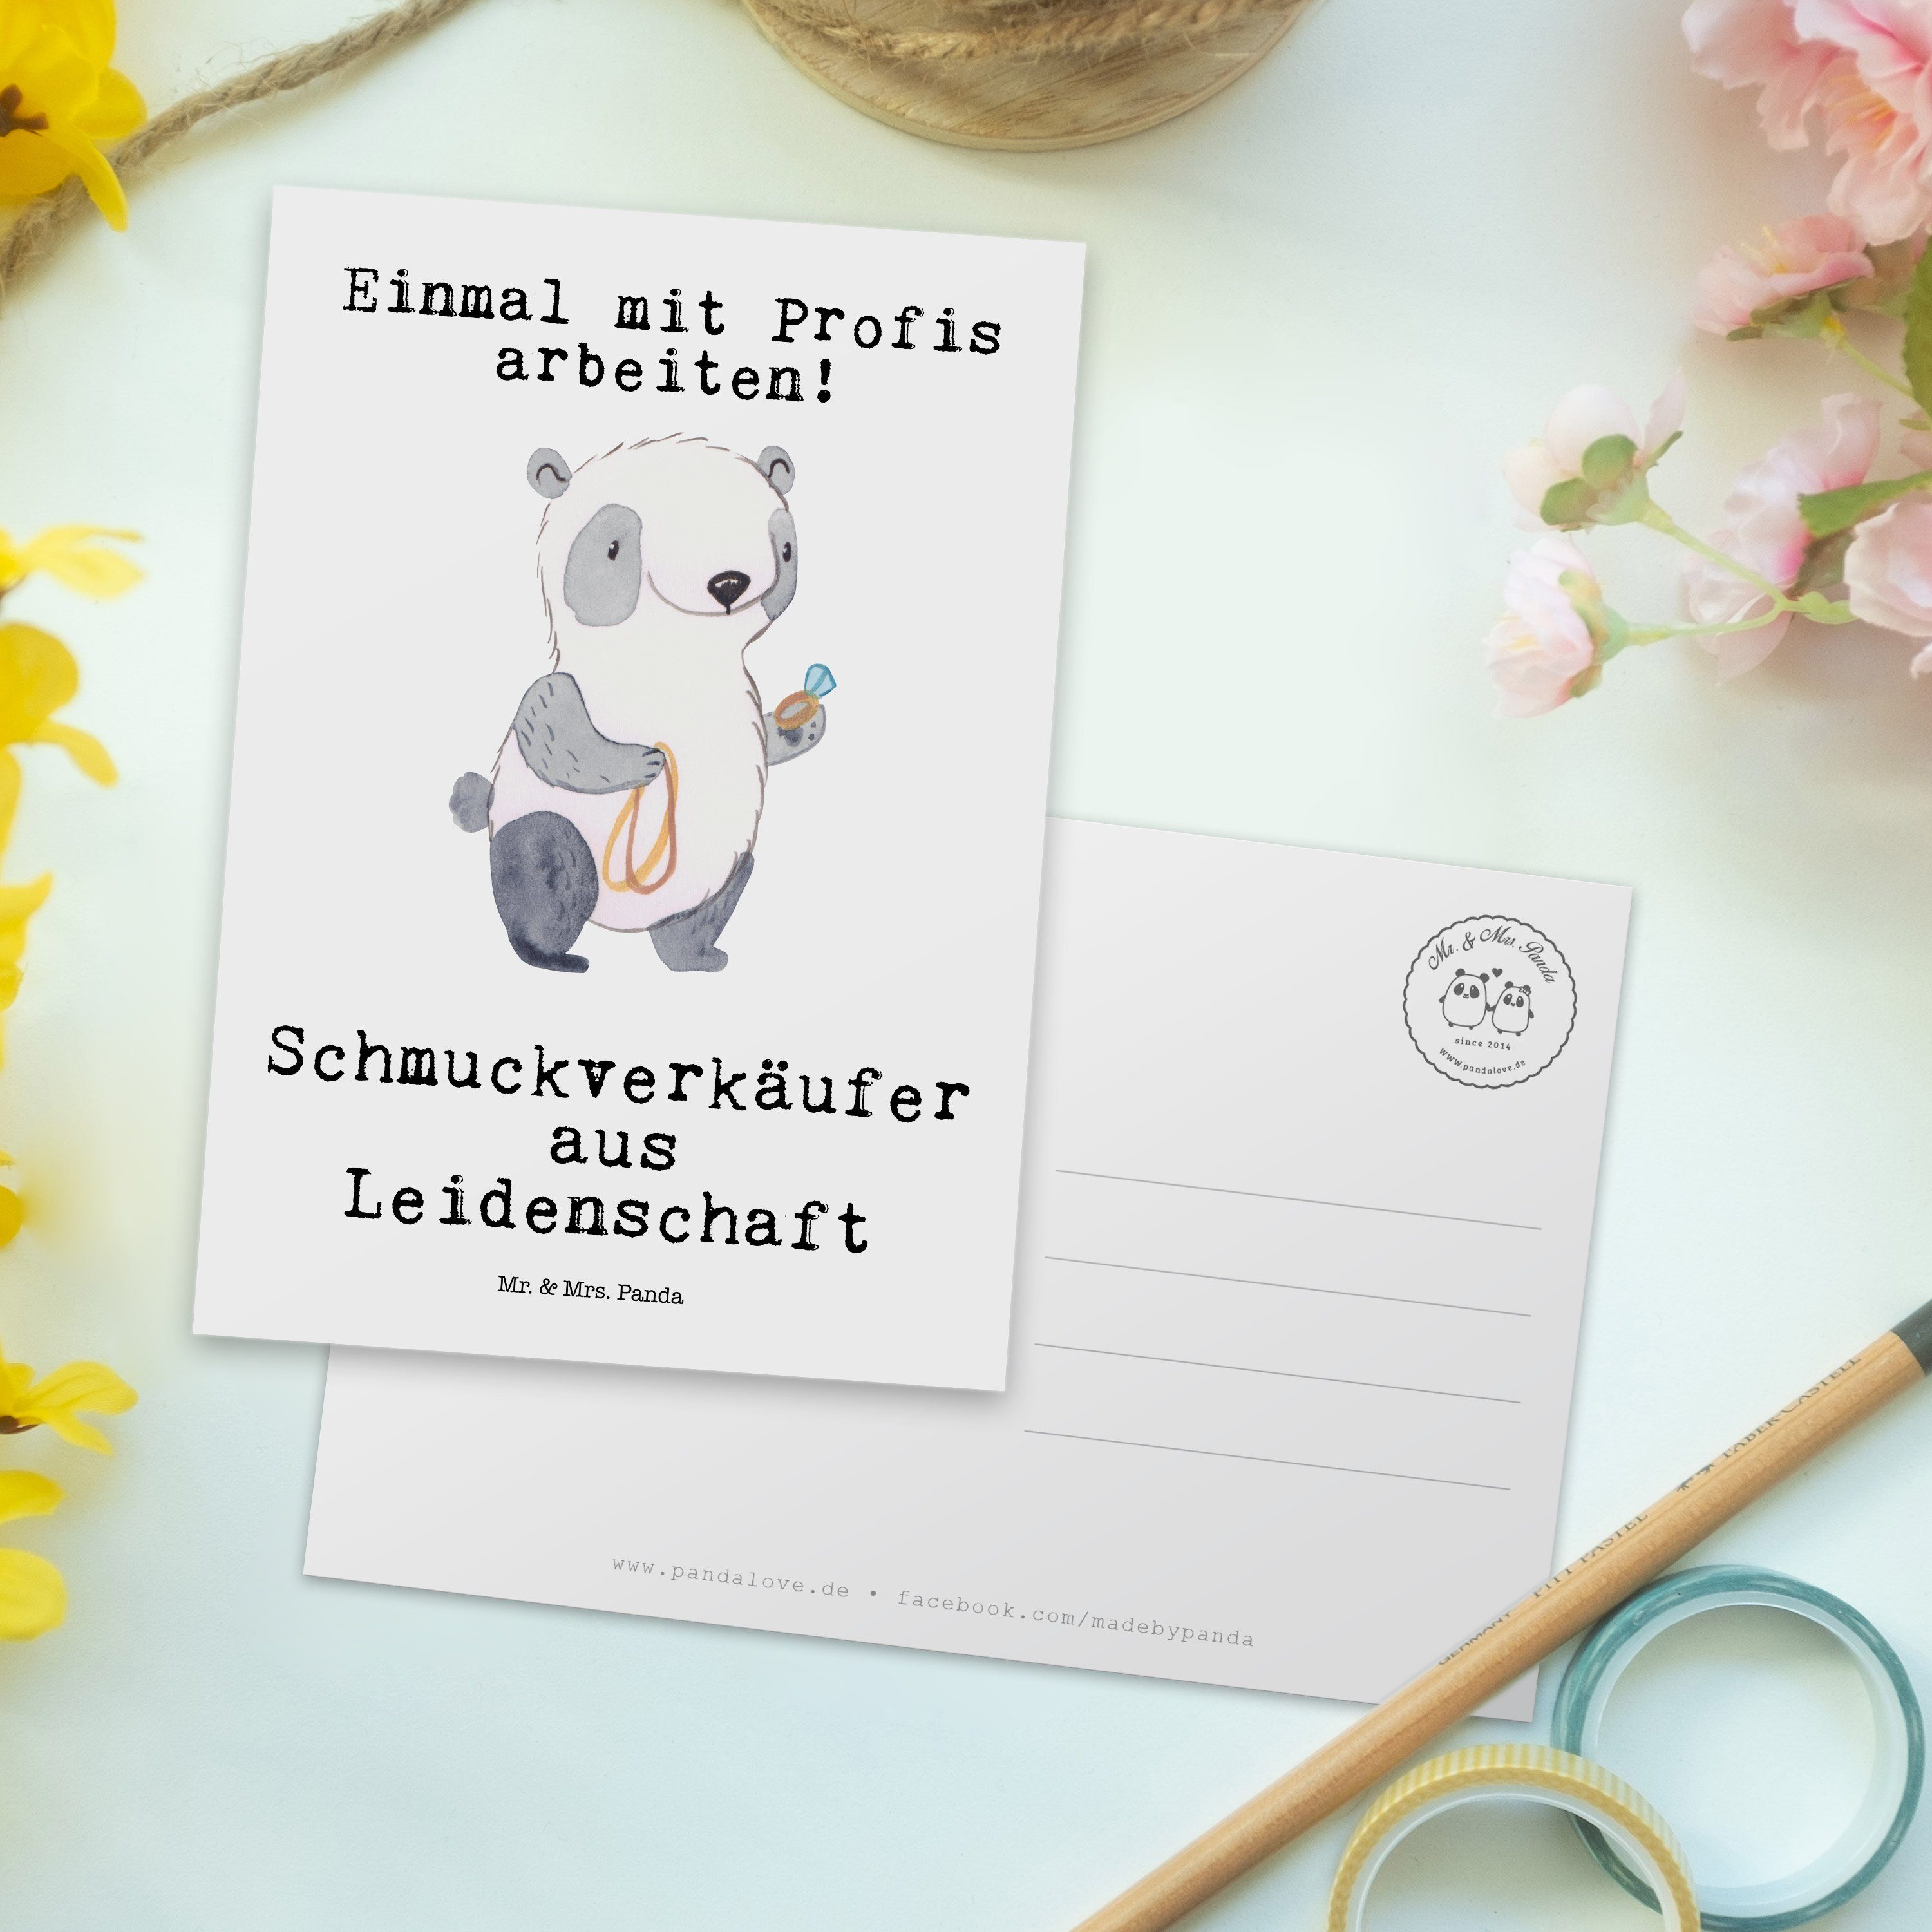 Mr. & Mrs. - Panda Mitarbeiter, Sch Weiß Schmuckverkäufer Leidenschaft Postkarte - aus Geschenk